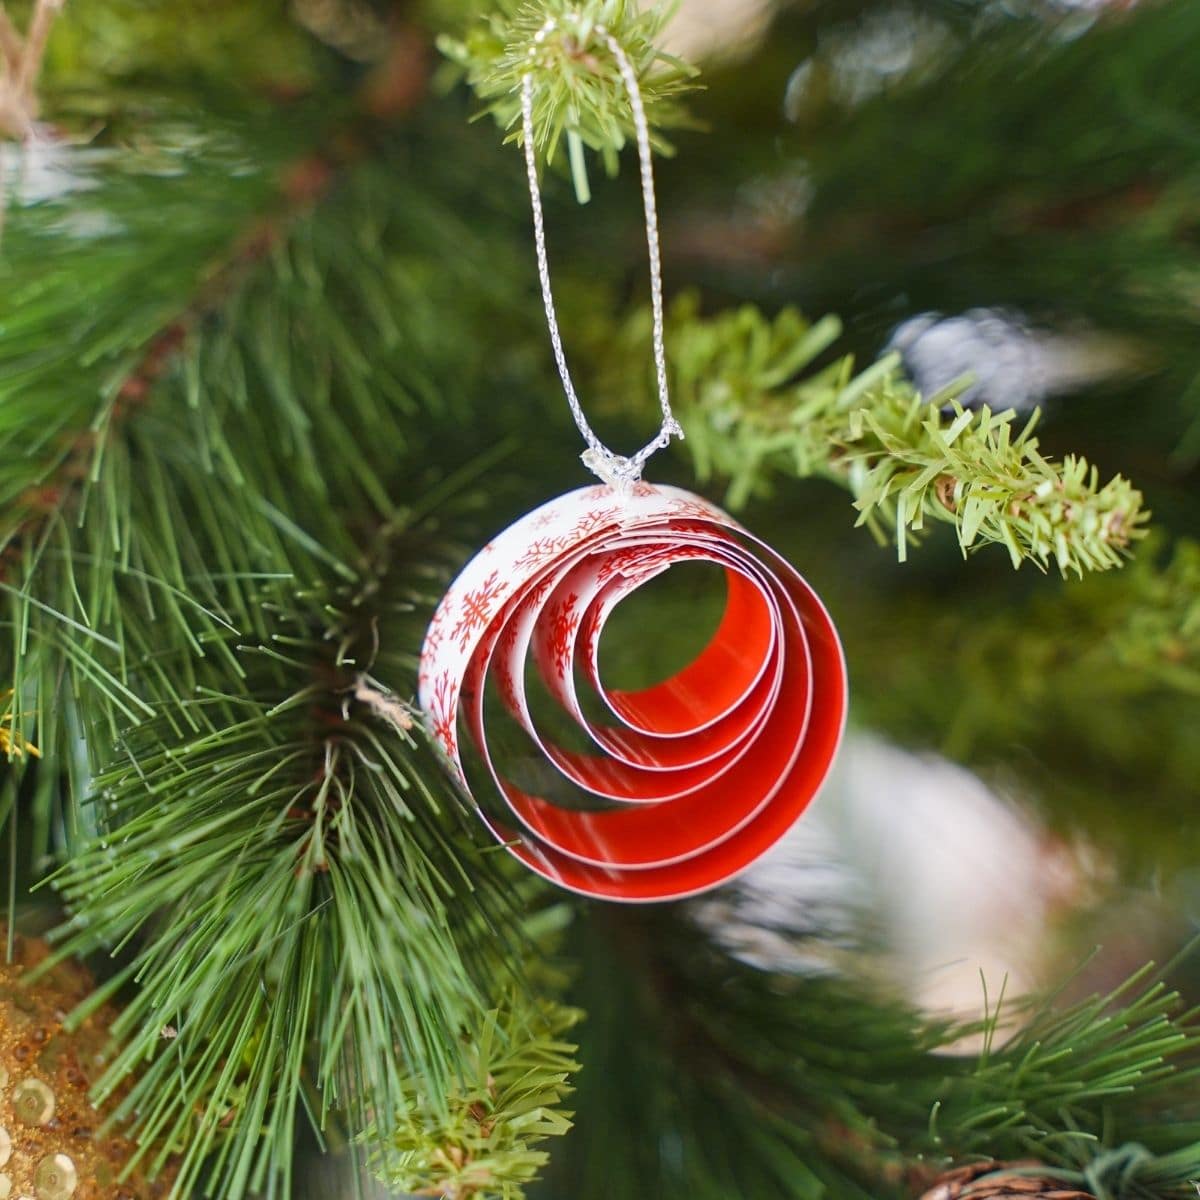 ornament iz rdečega in belega papirja, ki visi na božičnem drevesu